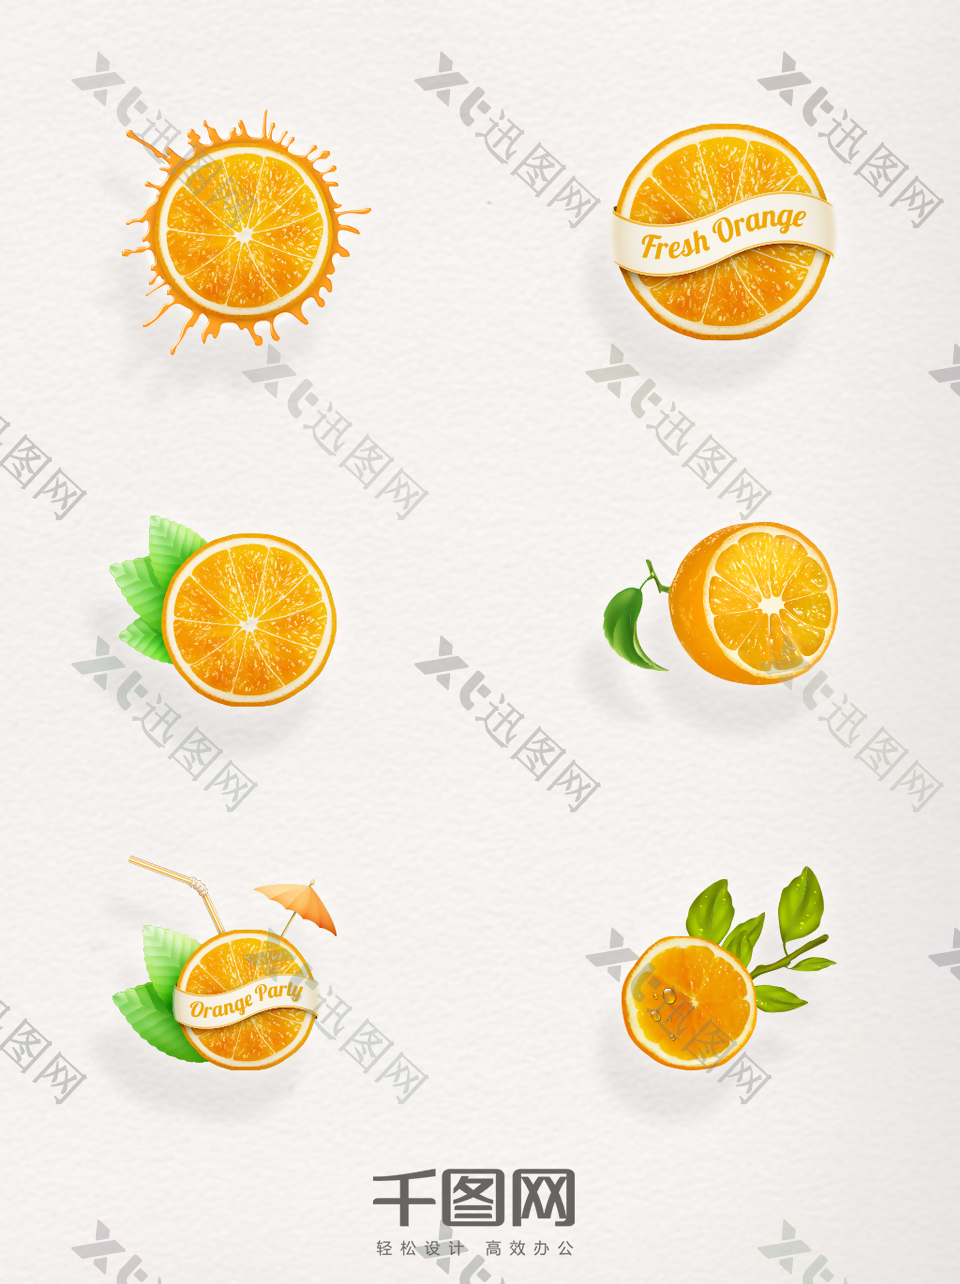 精致切开的橙子心想事橙平安夜水果